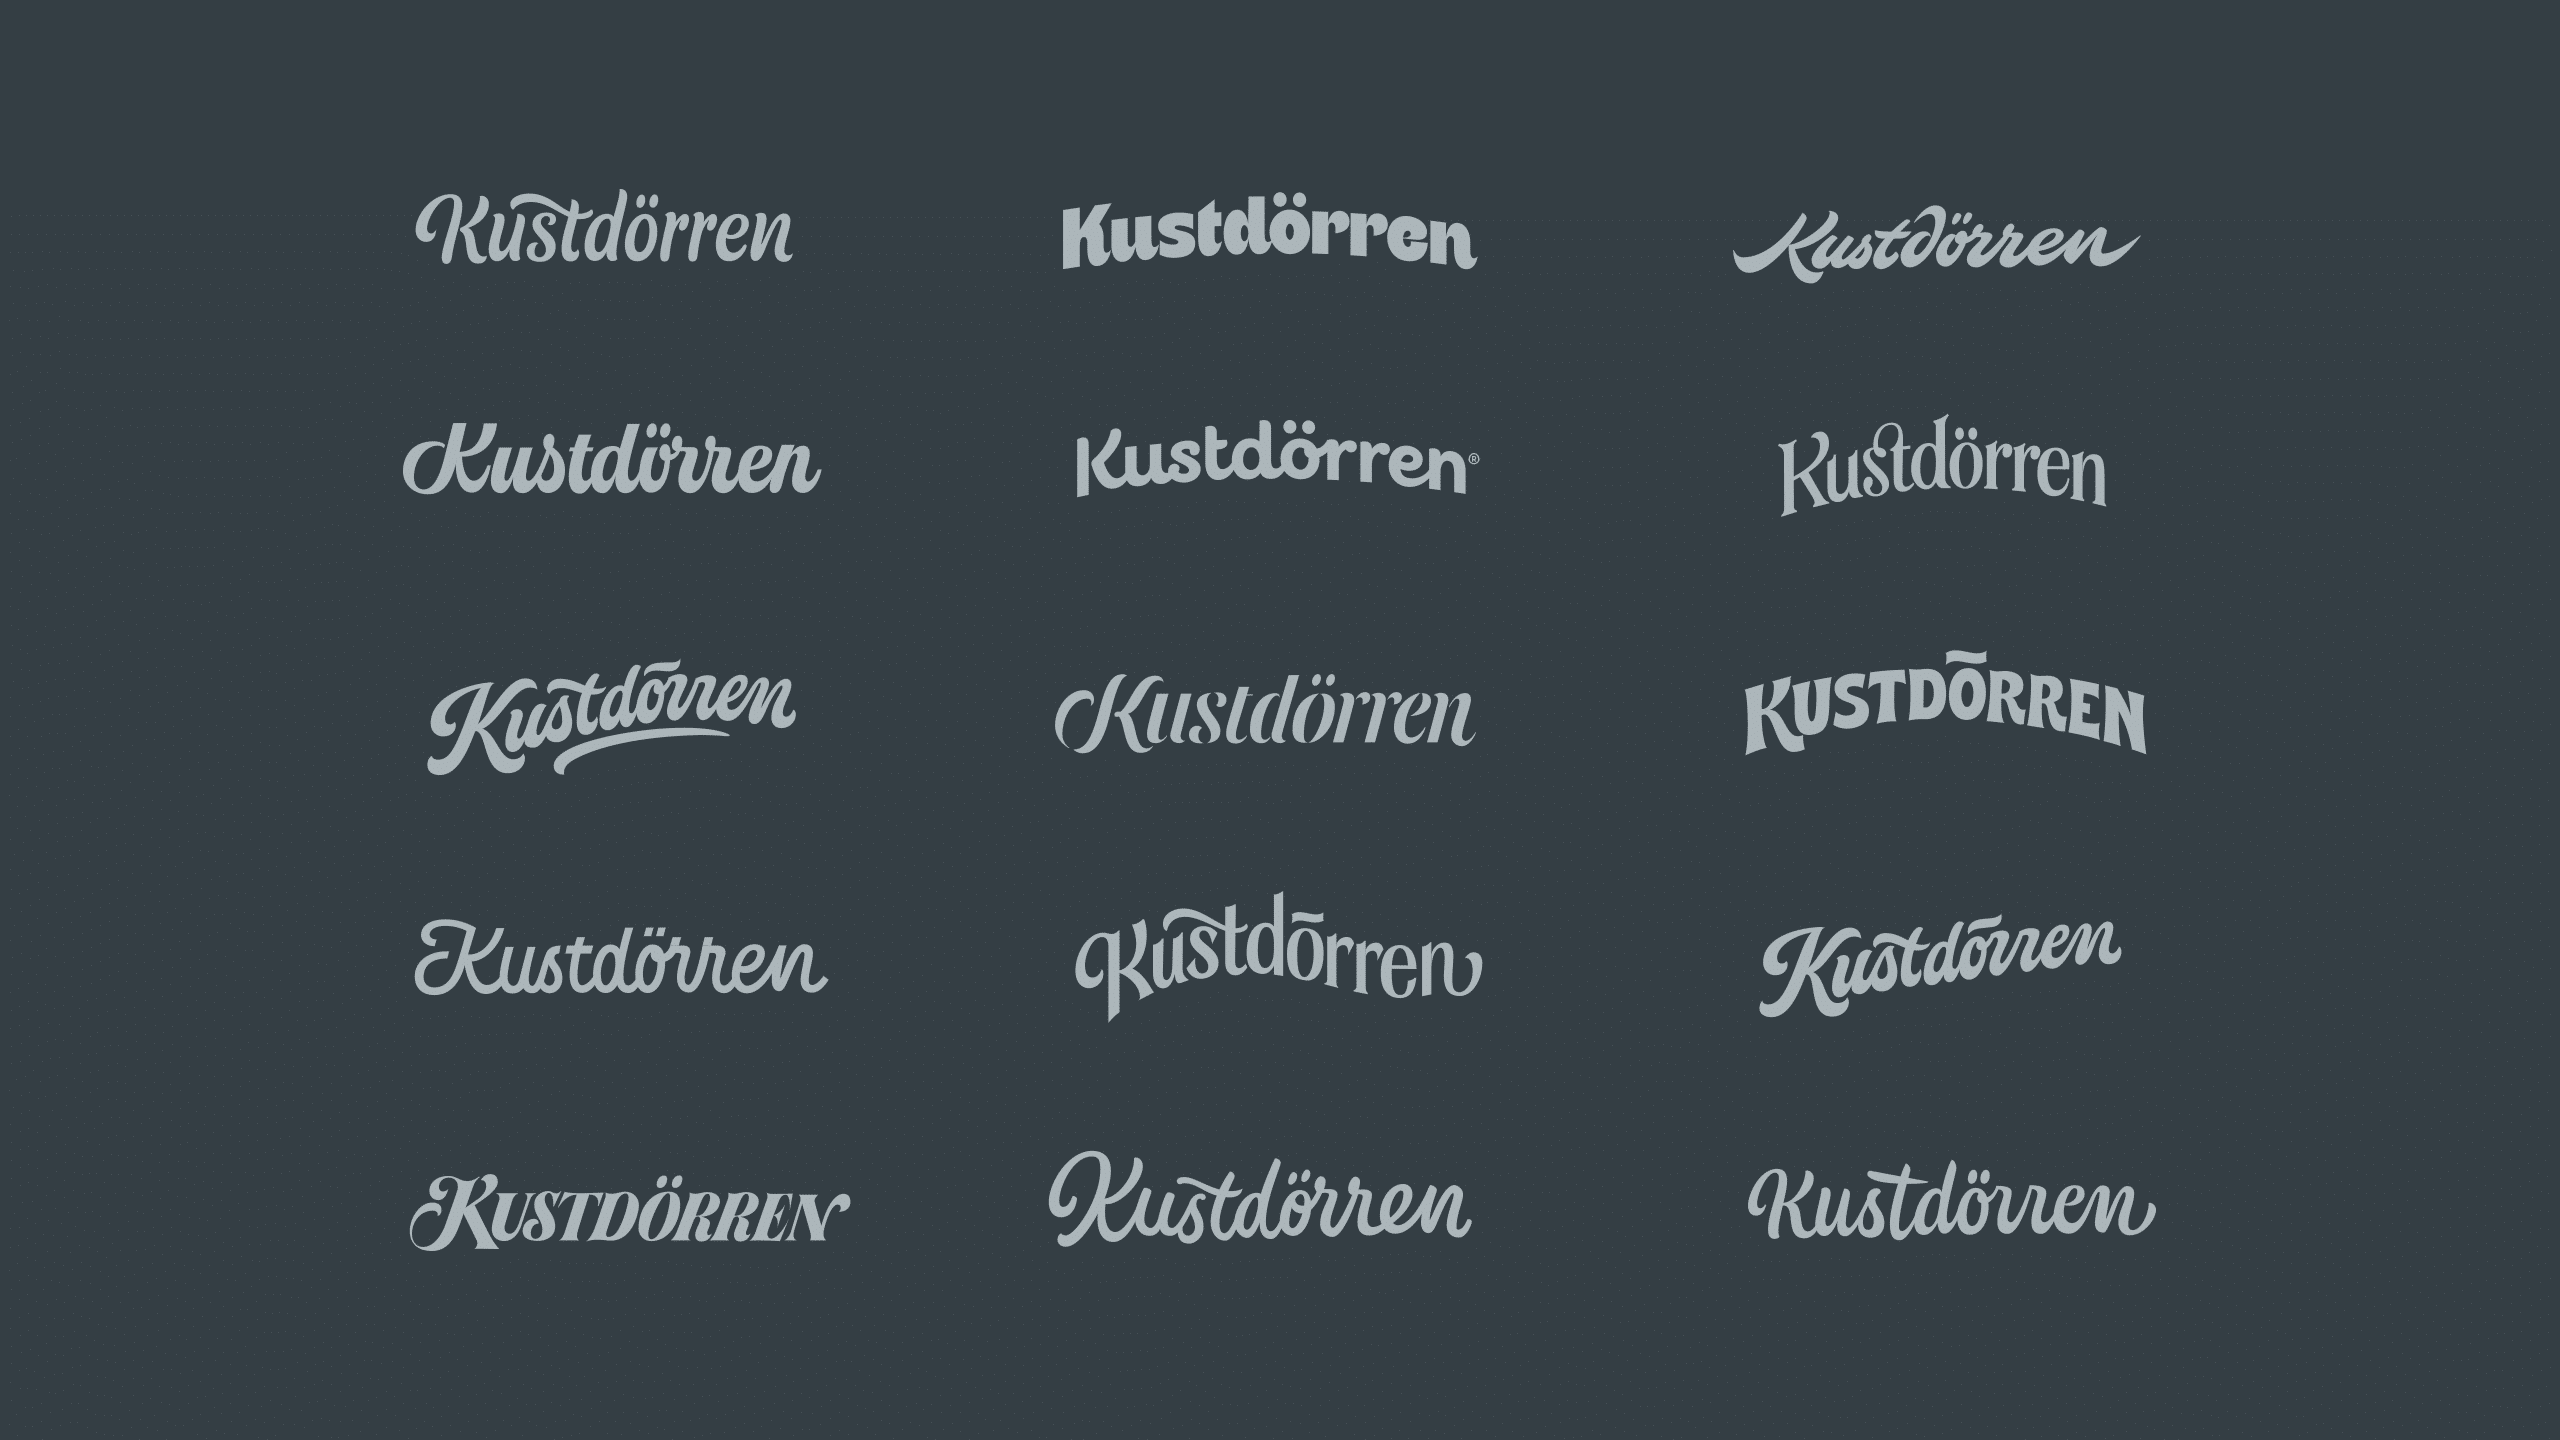 Digital logo drafts for Kustdörren